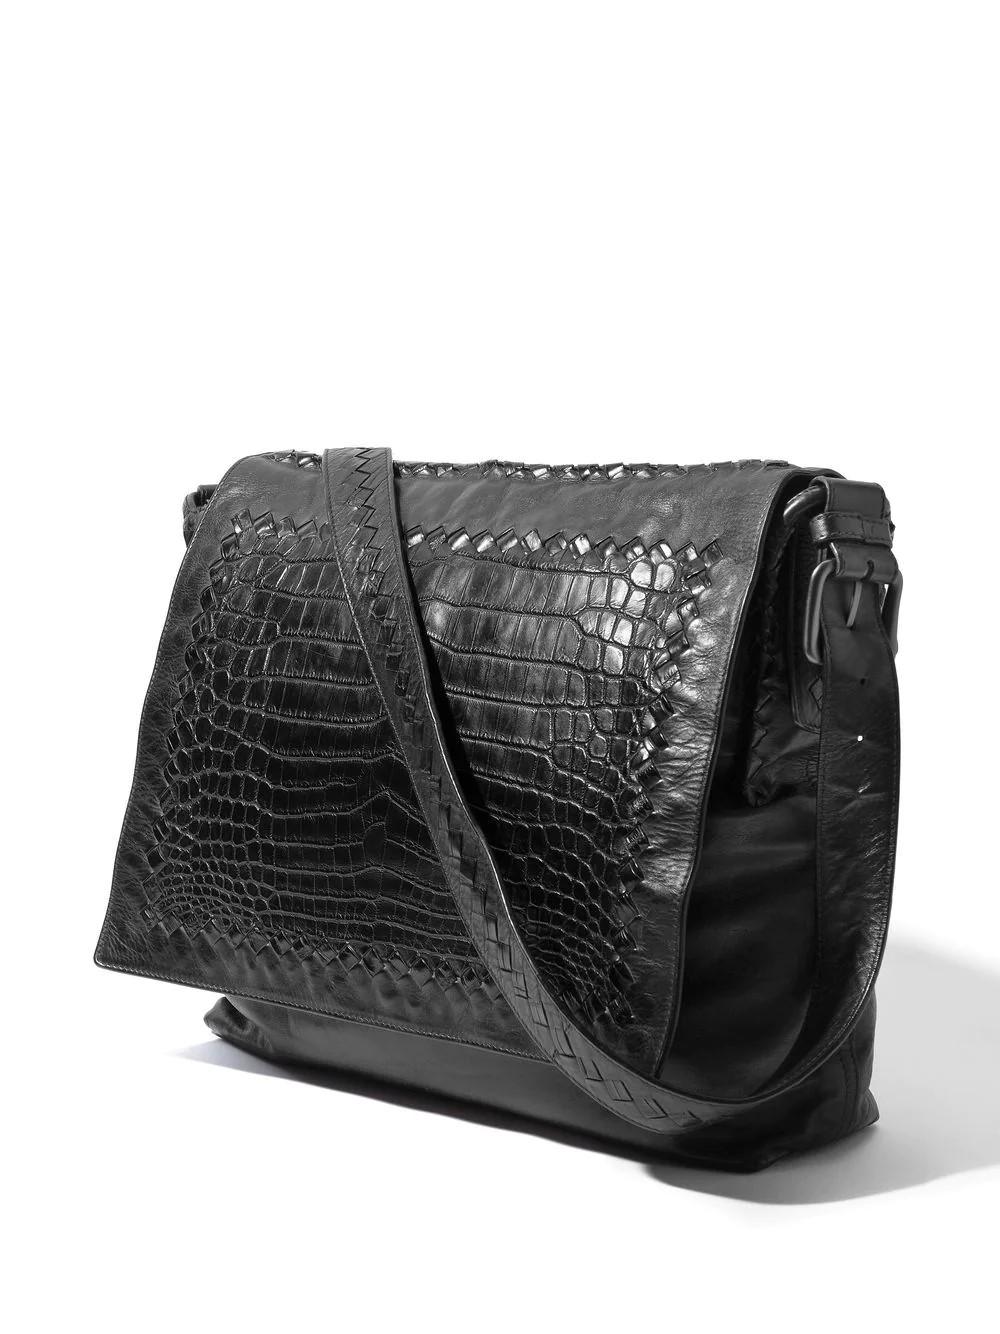 Men's Bottega Veneta Leather Messenger Bag